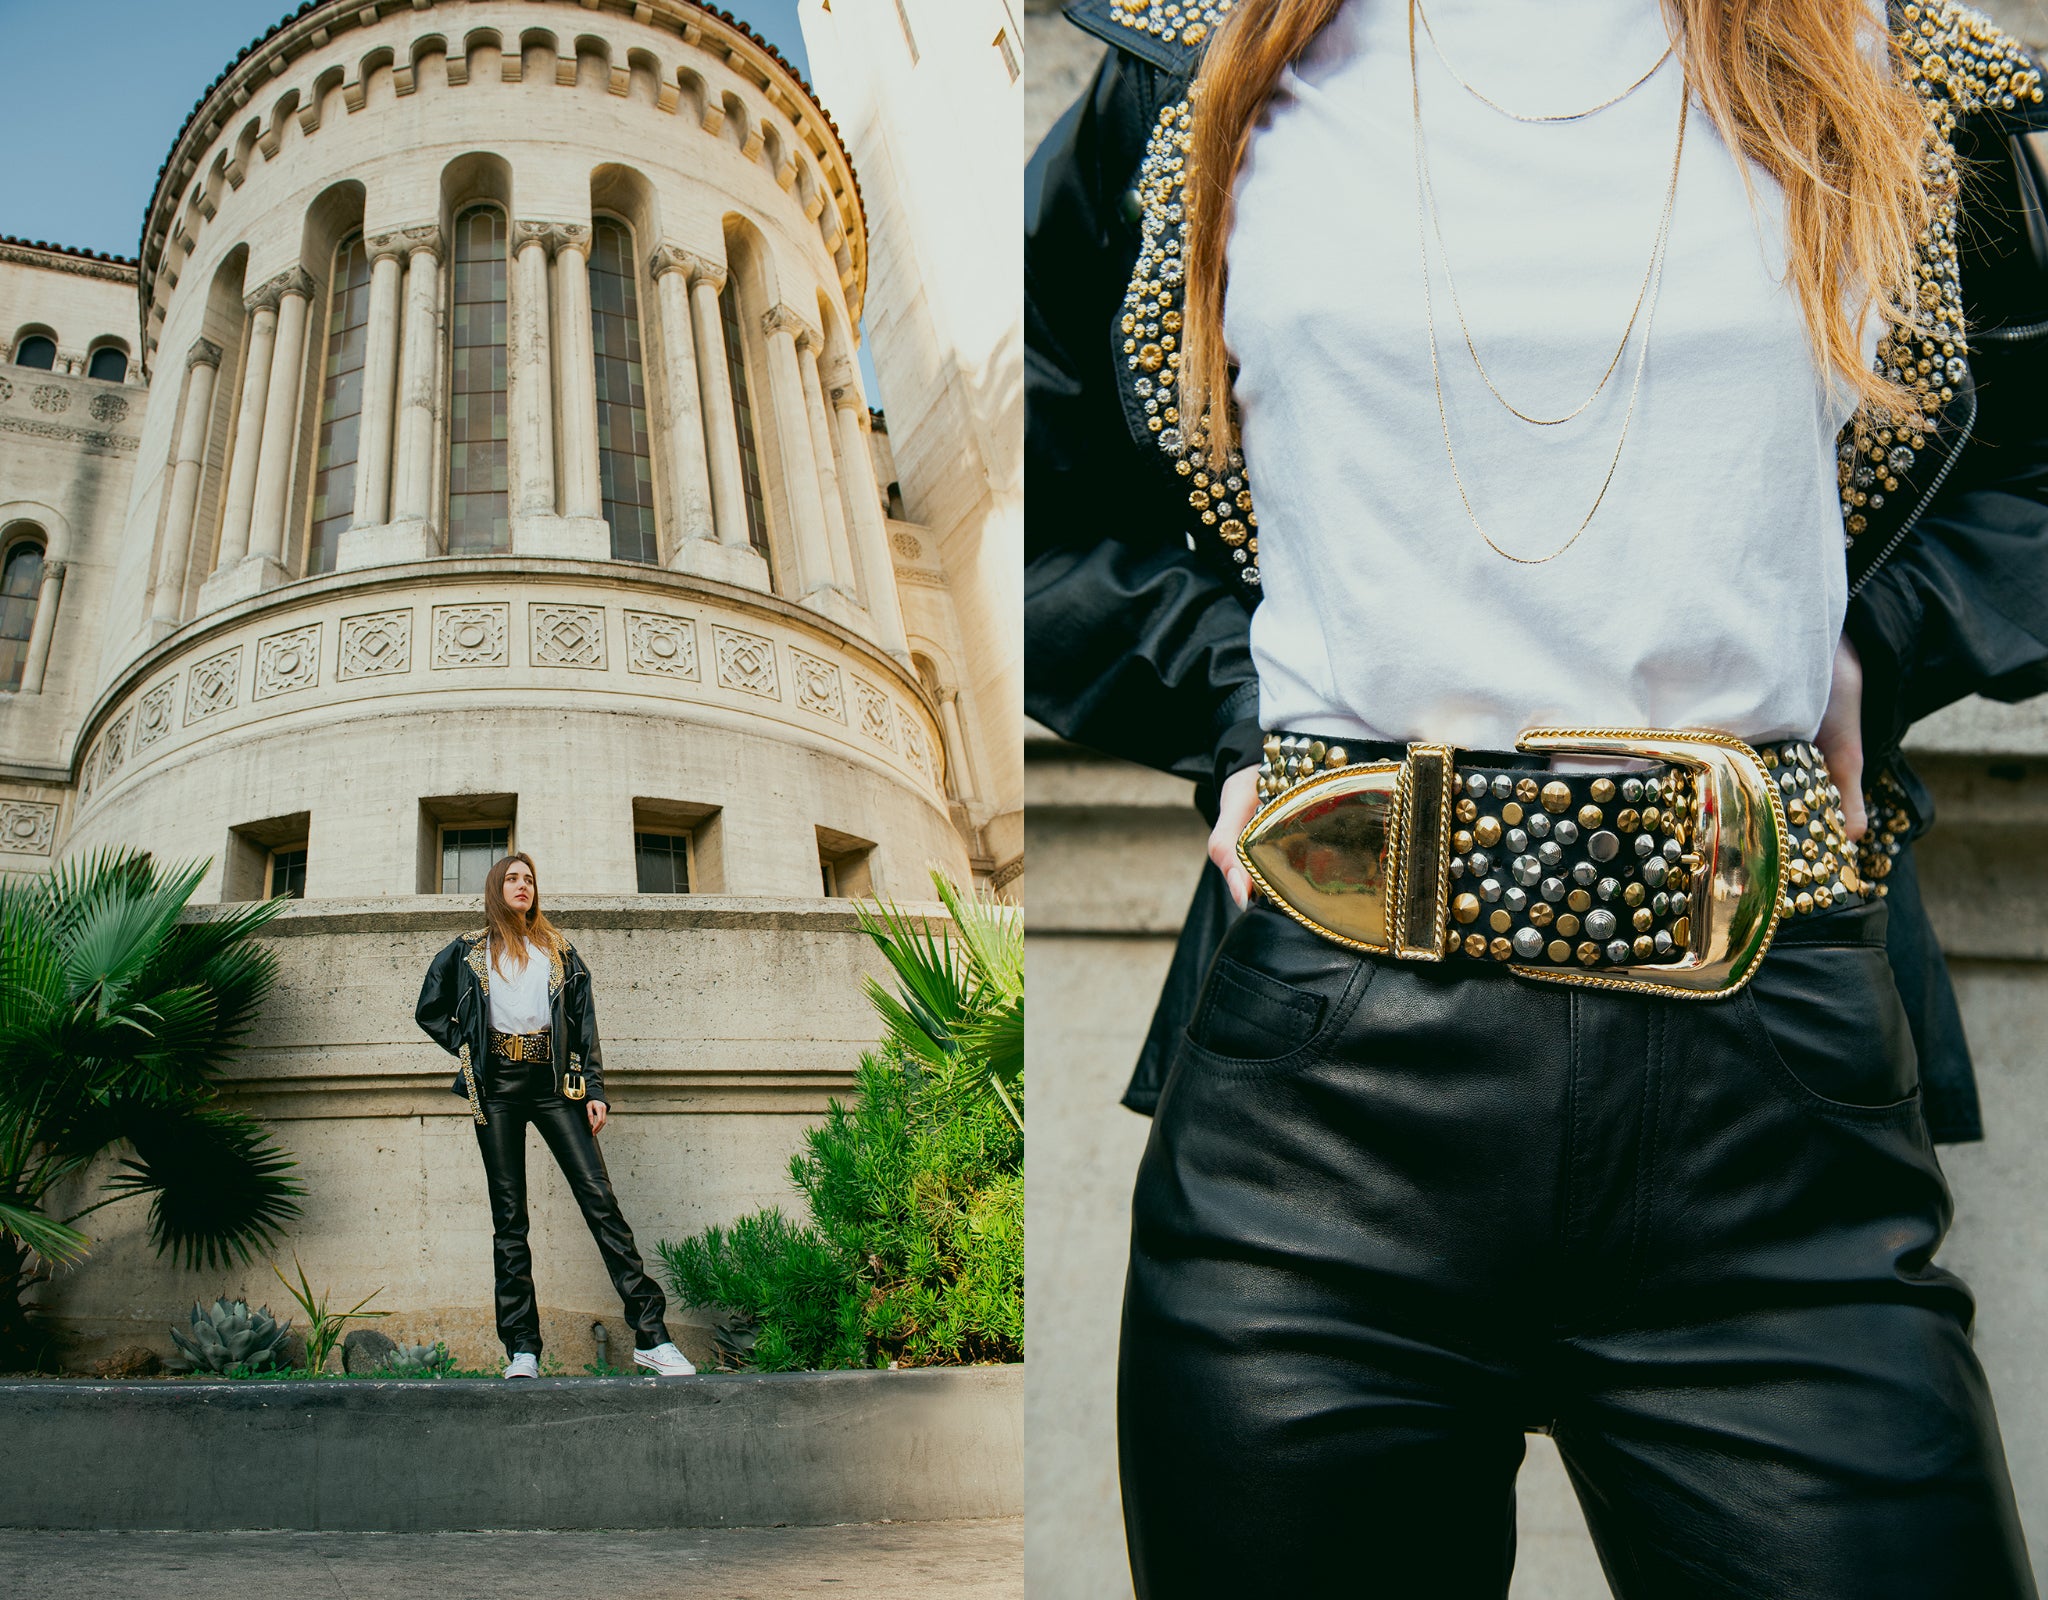 Recess Vintage Girl in Michael Morrison Studded jacket and belt